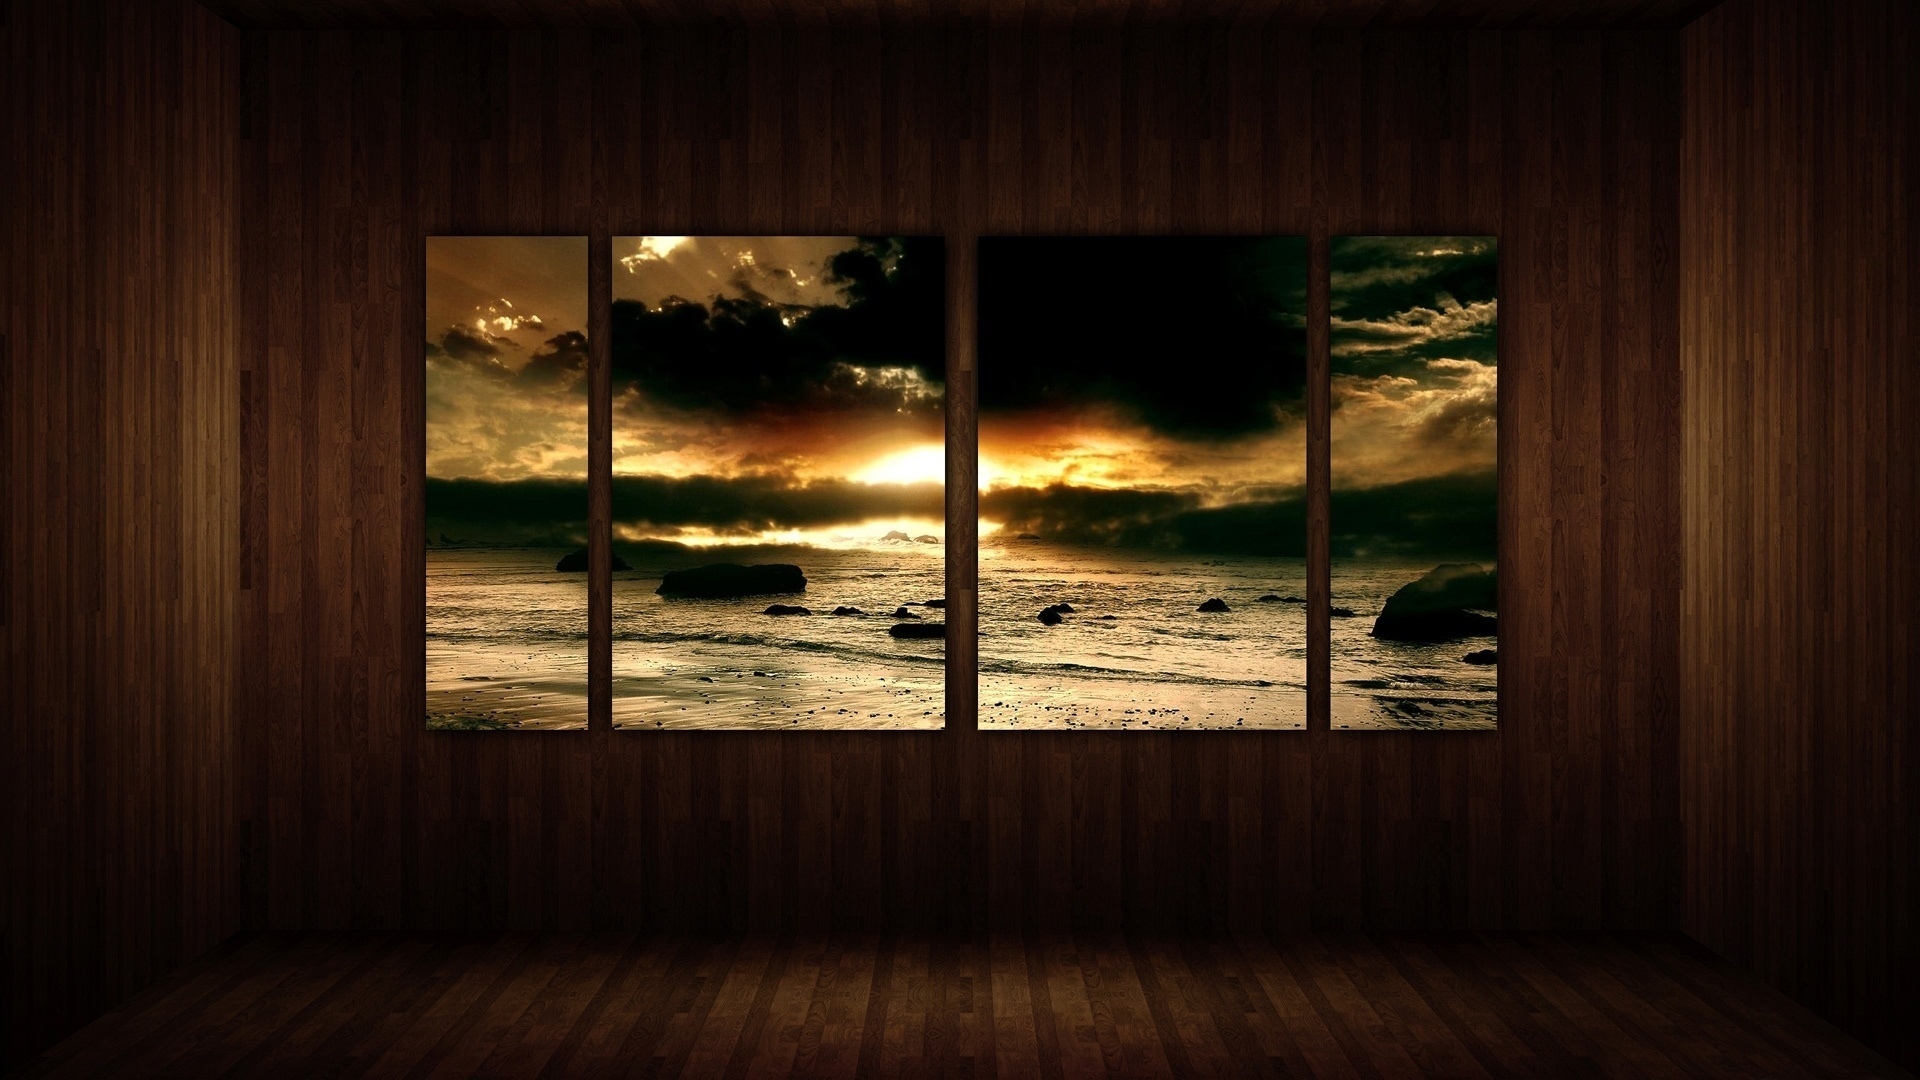 General 1920x1080 window shore rocks water sunset landscape room